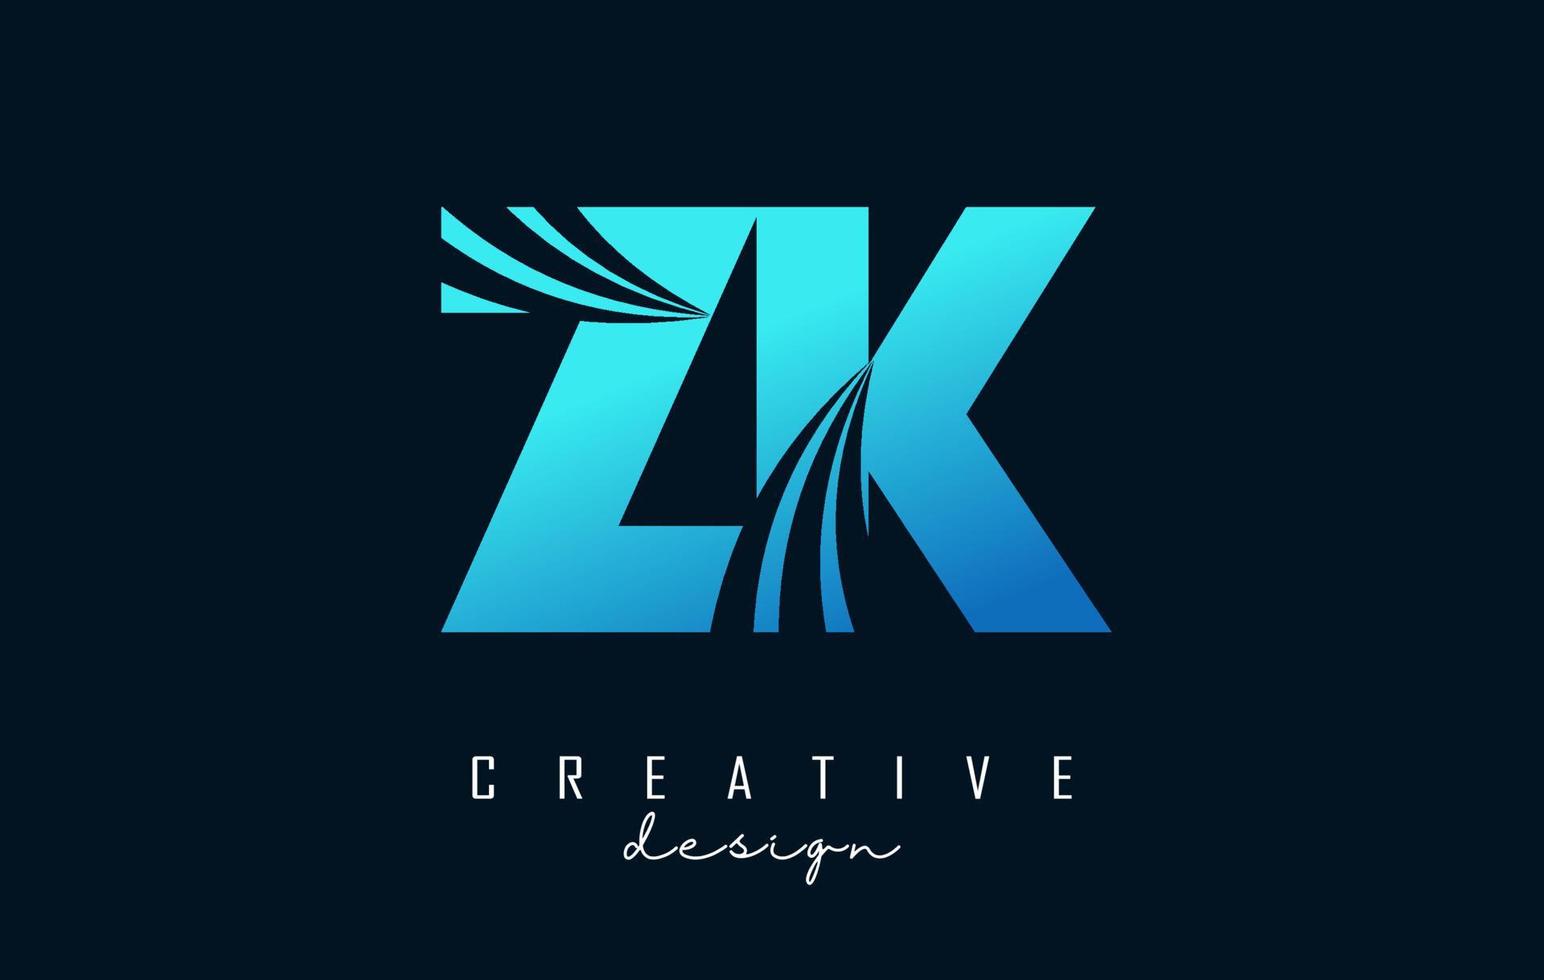 kreative blaue buchstaben zk zk logo mit führenden linien und straßenkonzeptdesign. Buchstaben mit geometrischem Design. vektor